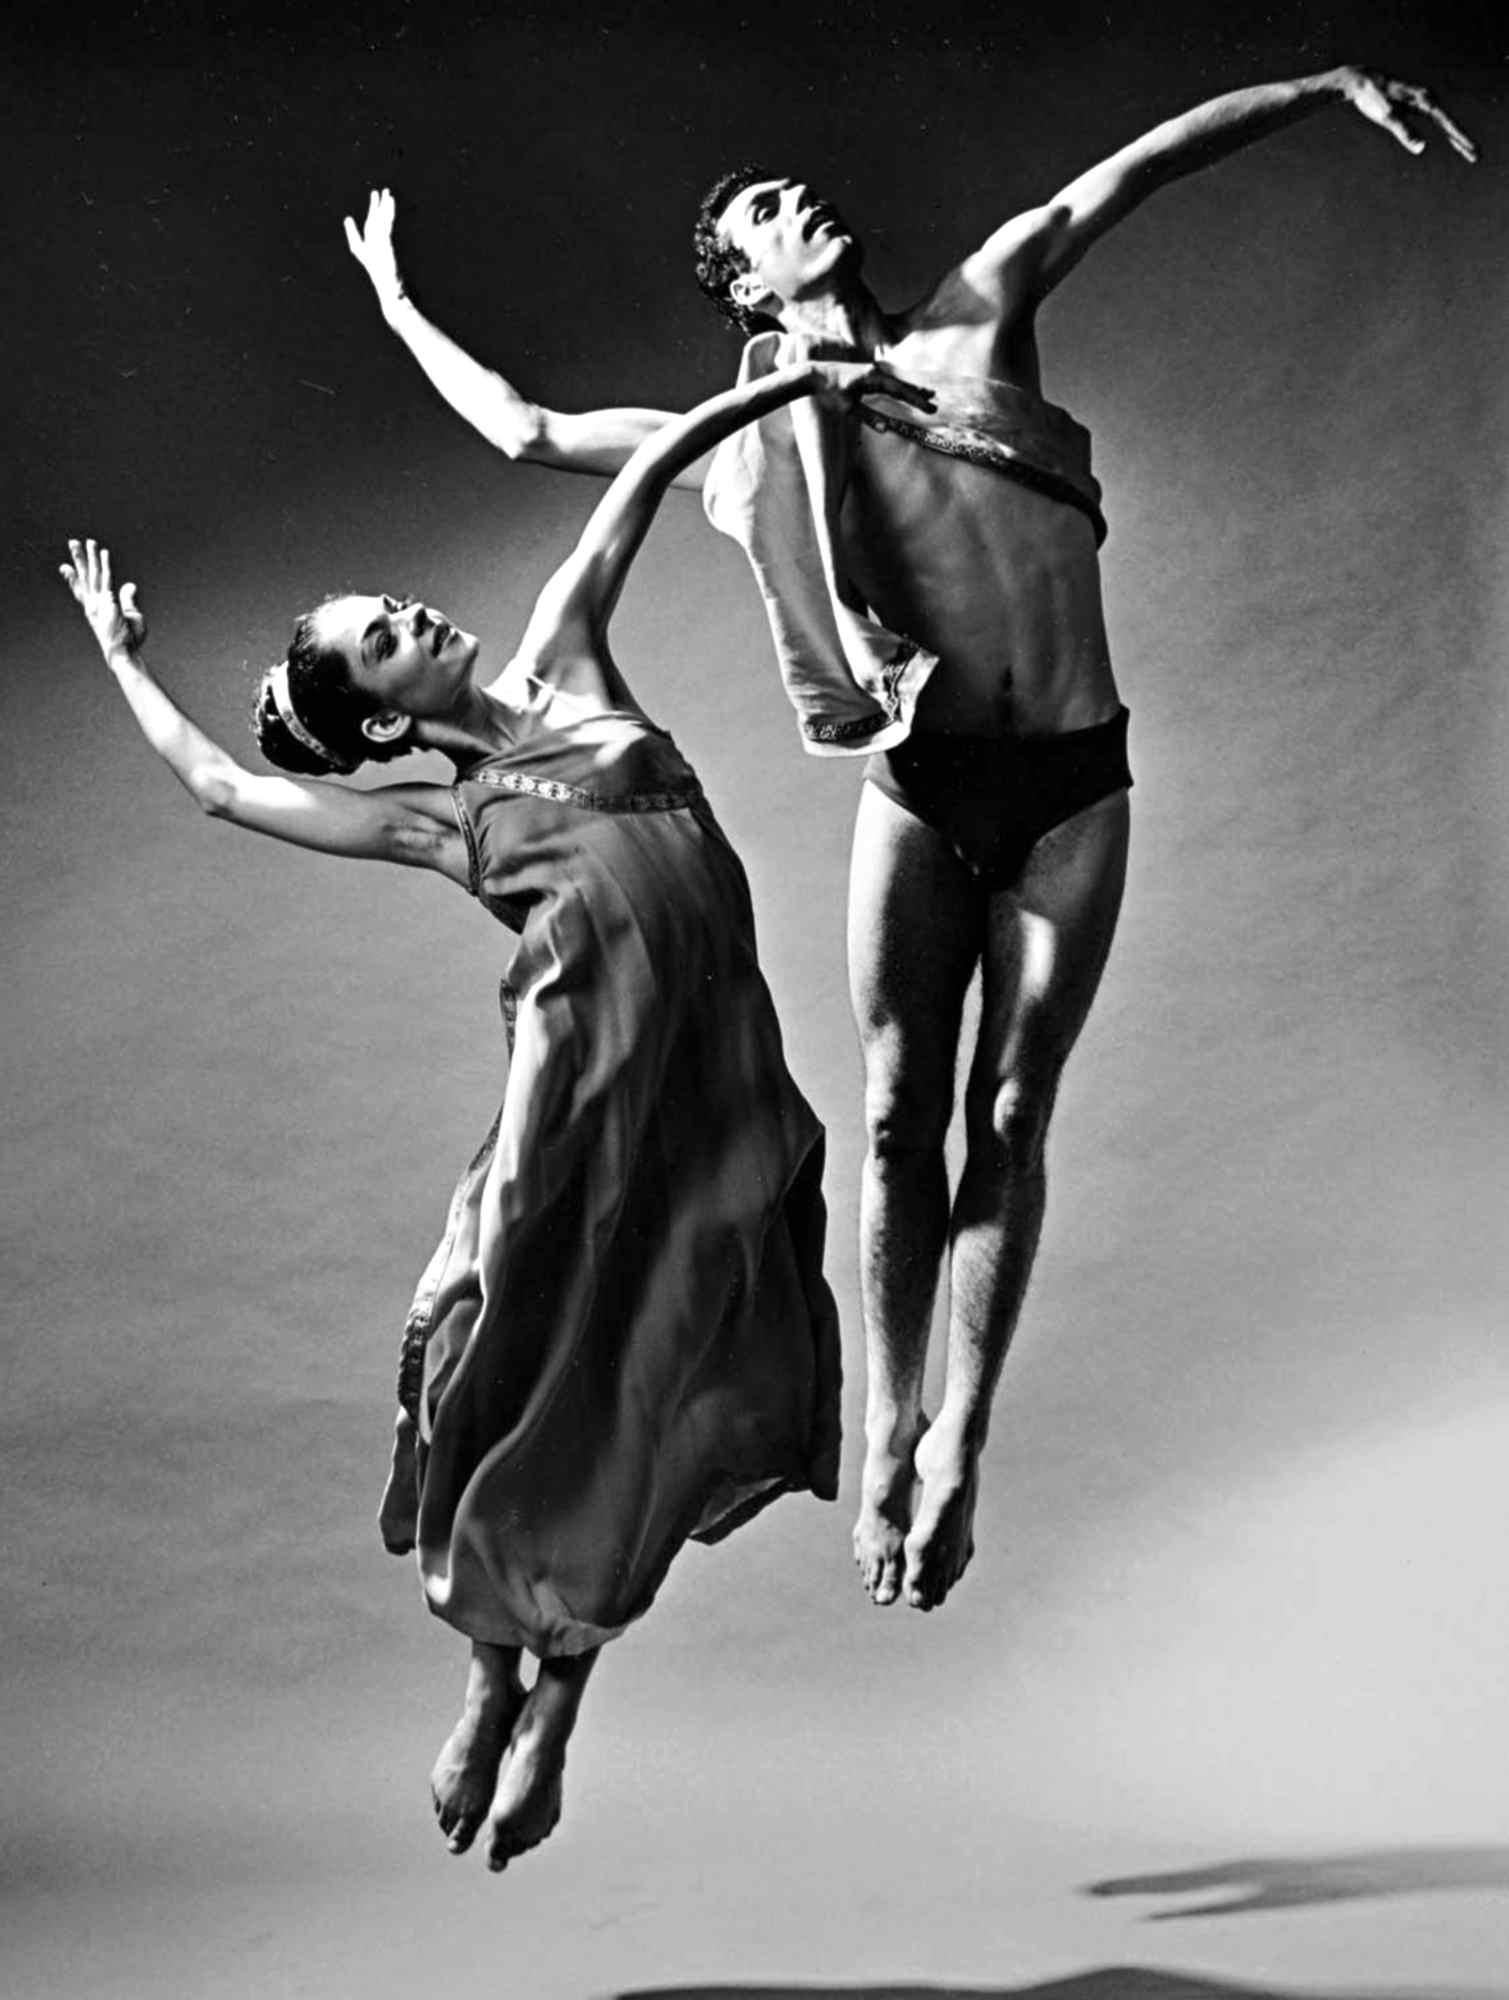 Silbergelatinefotografie im Format 11 x 14" von den Tänzern Norman Walker und Cora Cahan bei der Aufführung von "Trionco di Afrodite", 1965. Signiert von Jack Mitchell auf der Rückseite des Drucks. Kommt direkt aus den Jack Mitchell Archives mit